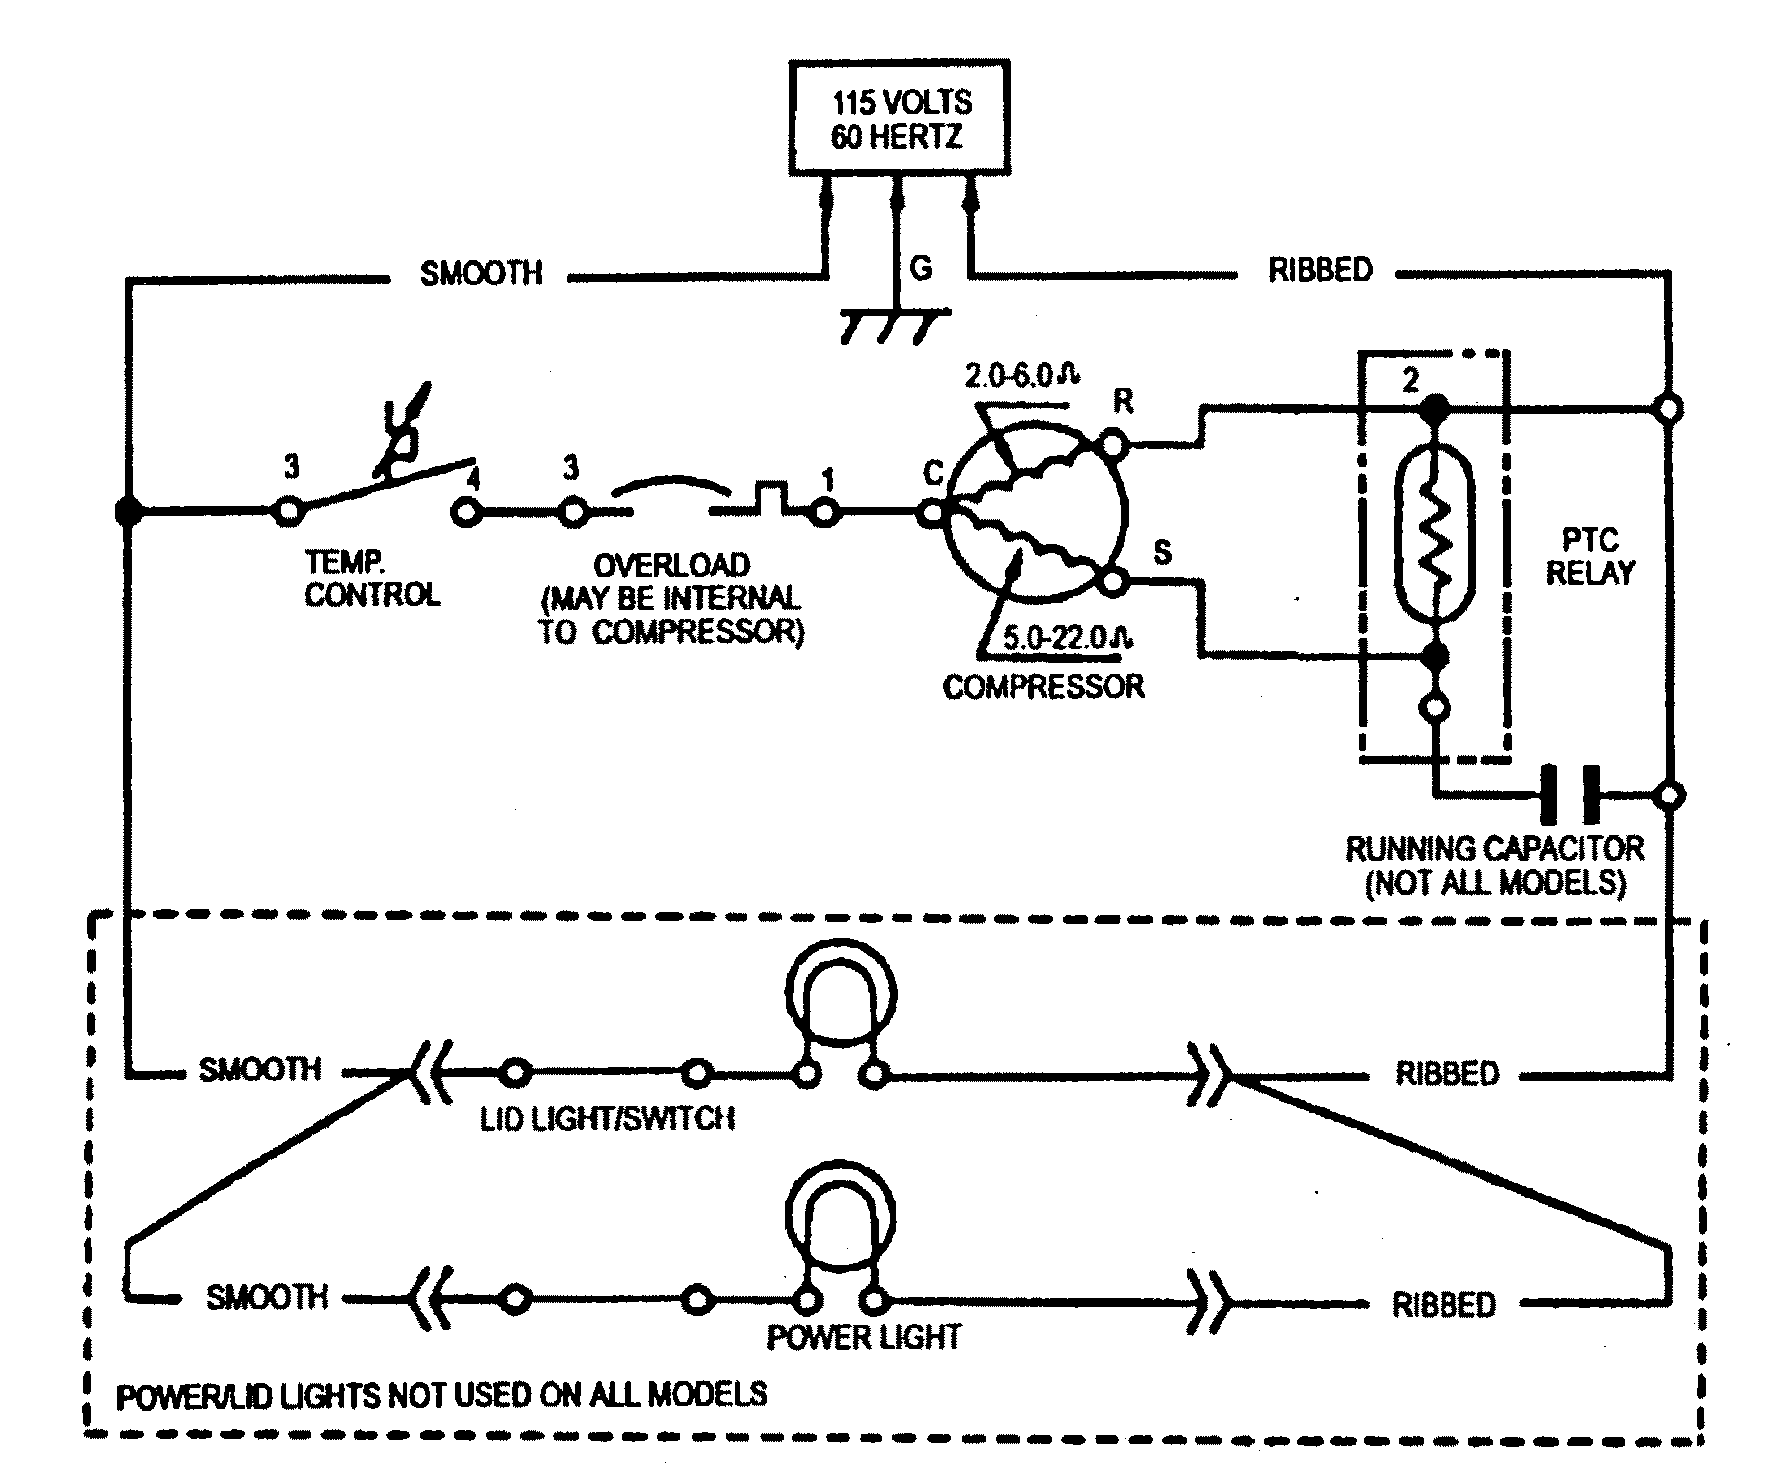 Freezer Defrost Timer Wiring Diagram